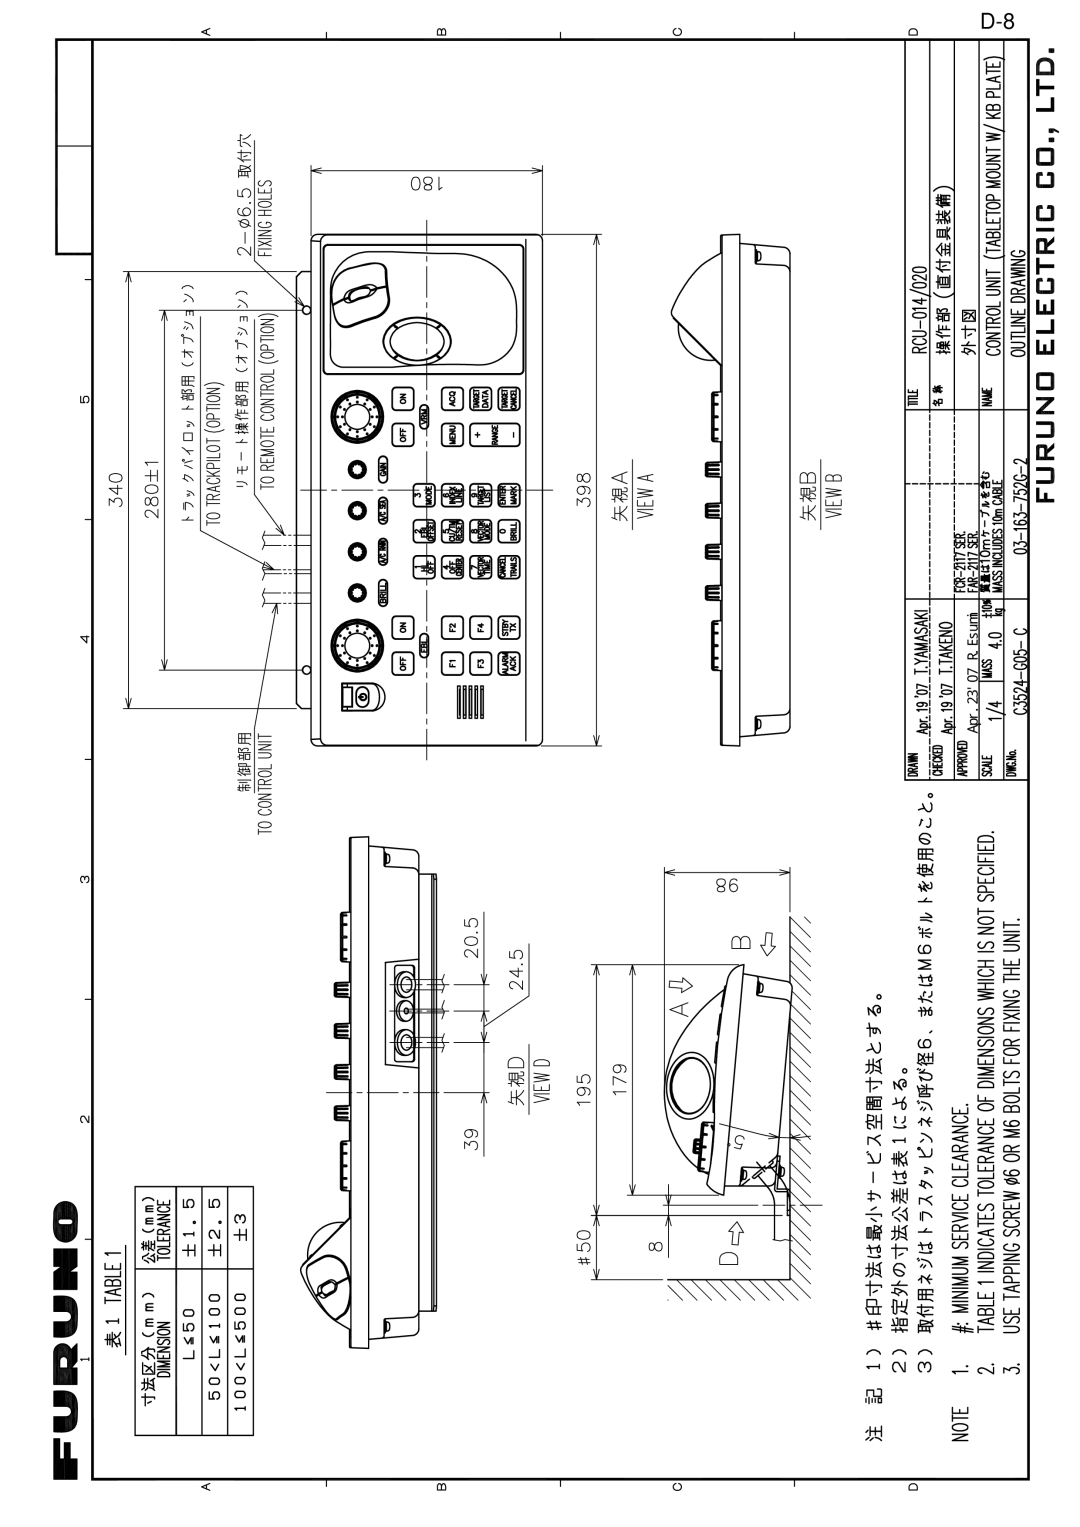 Furuno FAR-2157 installation manual Apr.2307 R.Esumi 